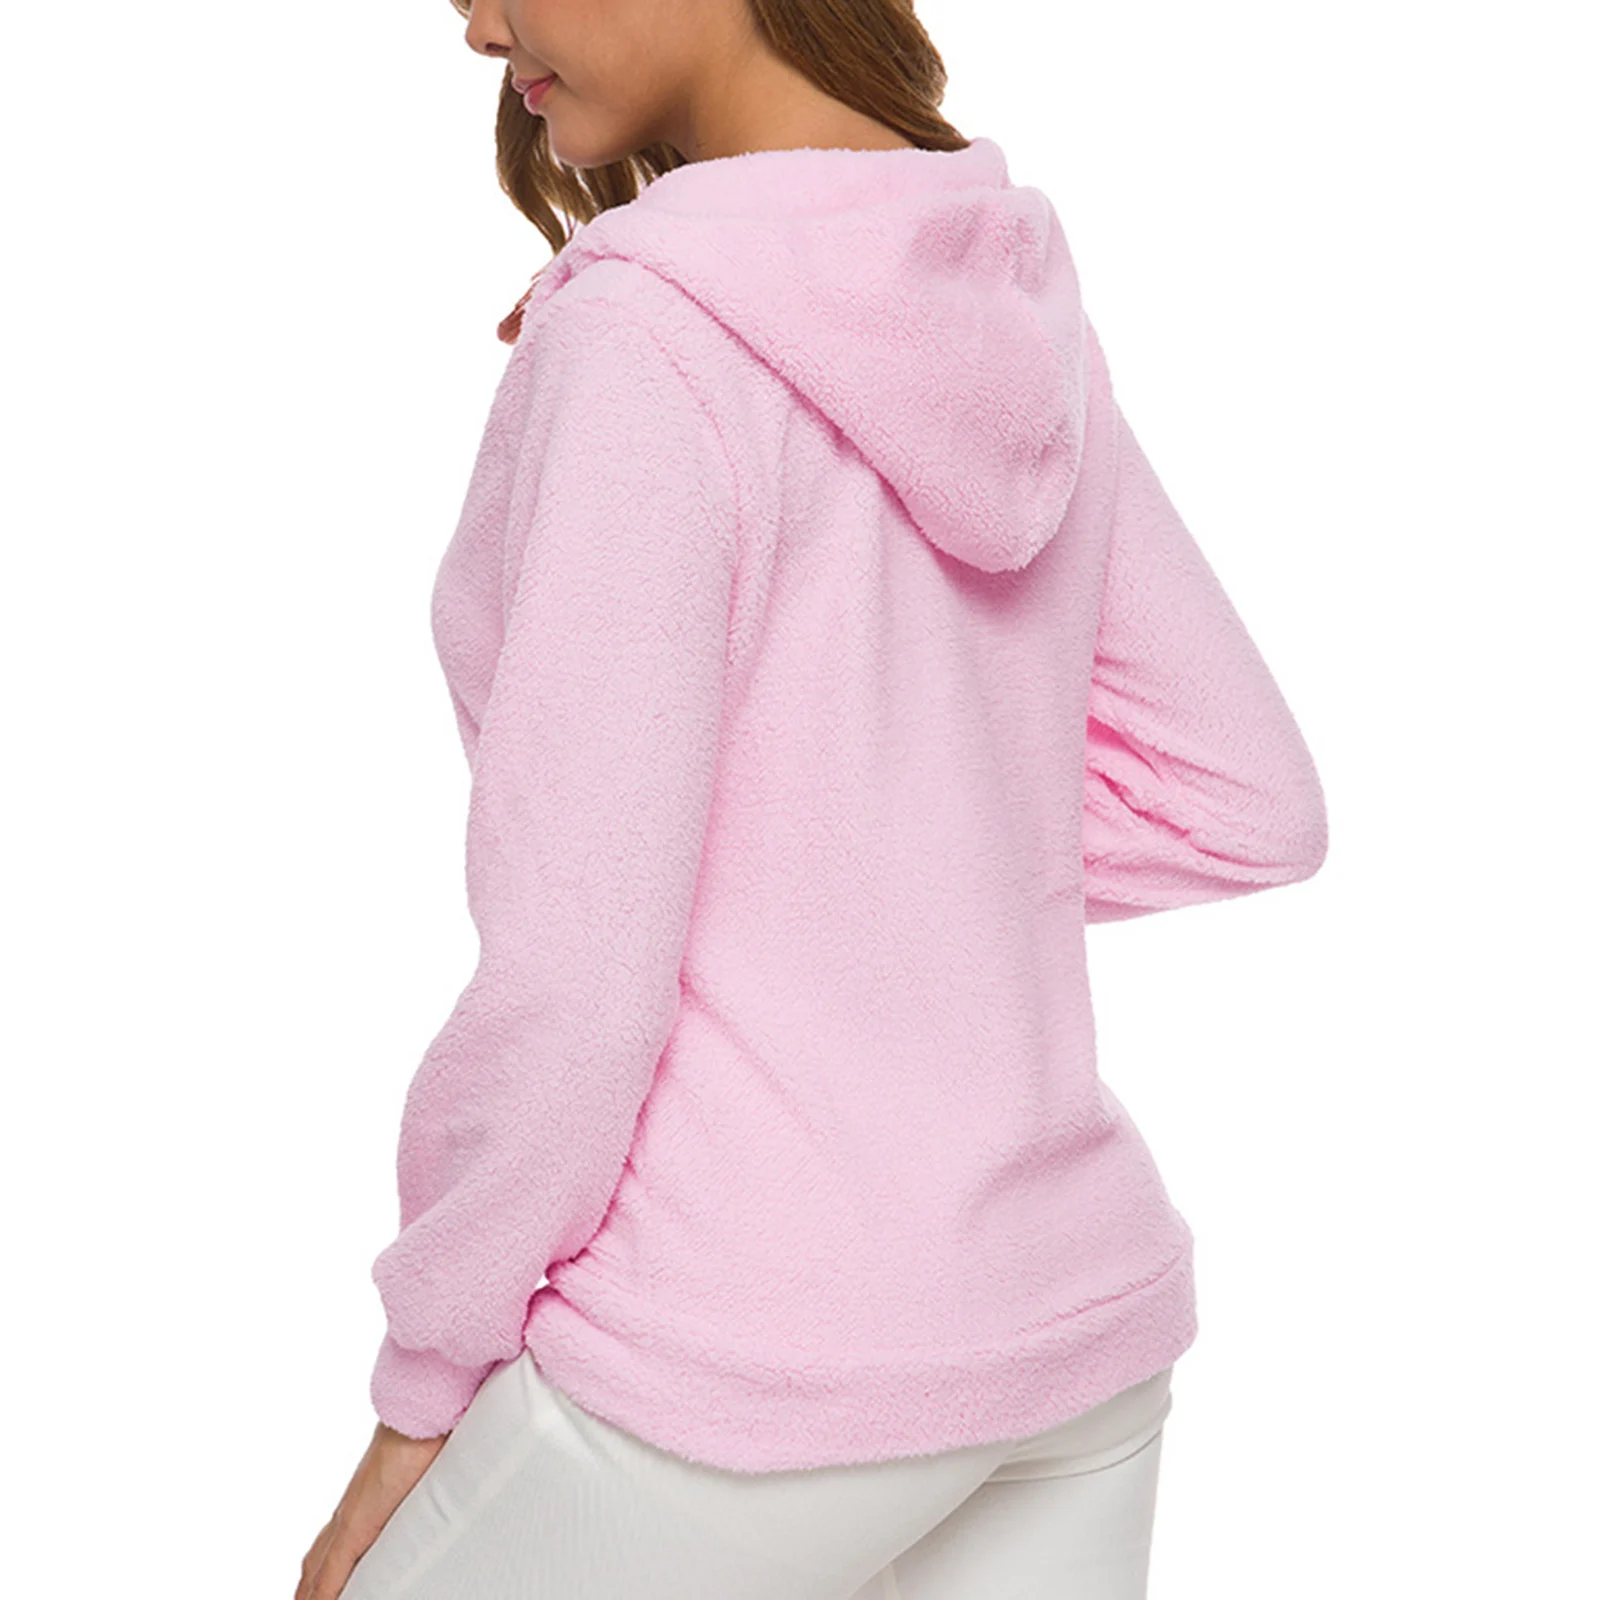 New Hot Women's Oversized Warm Faux Fuzzy Hoodies Casual Zip Up Jackets Coat Hooded Sweatshirt Outwear SMR88